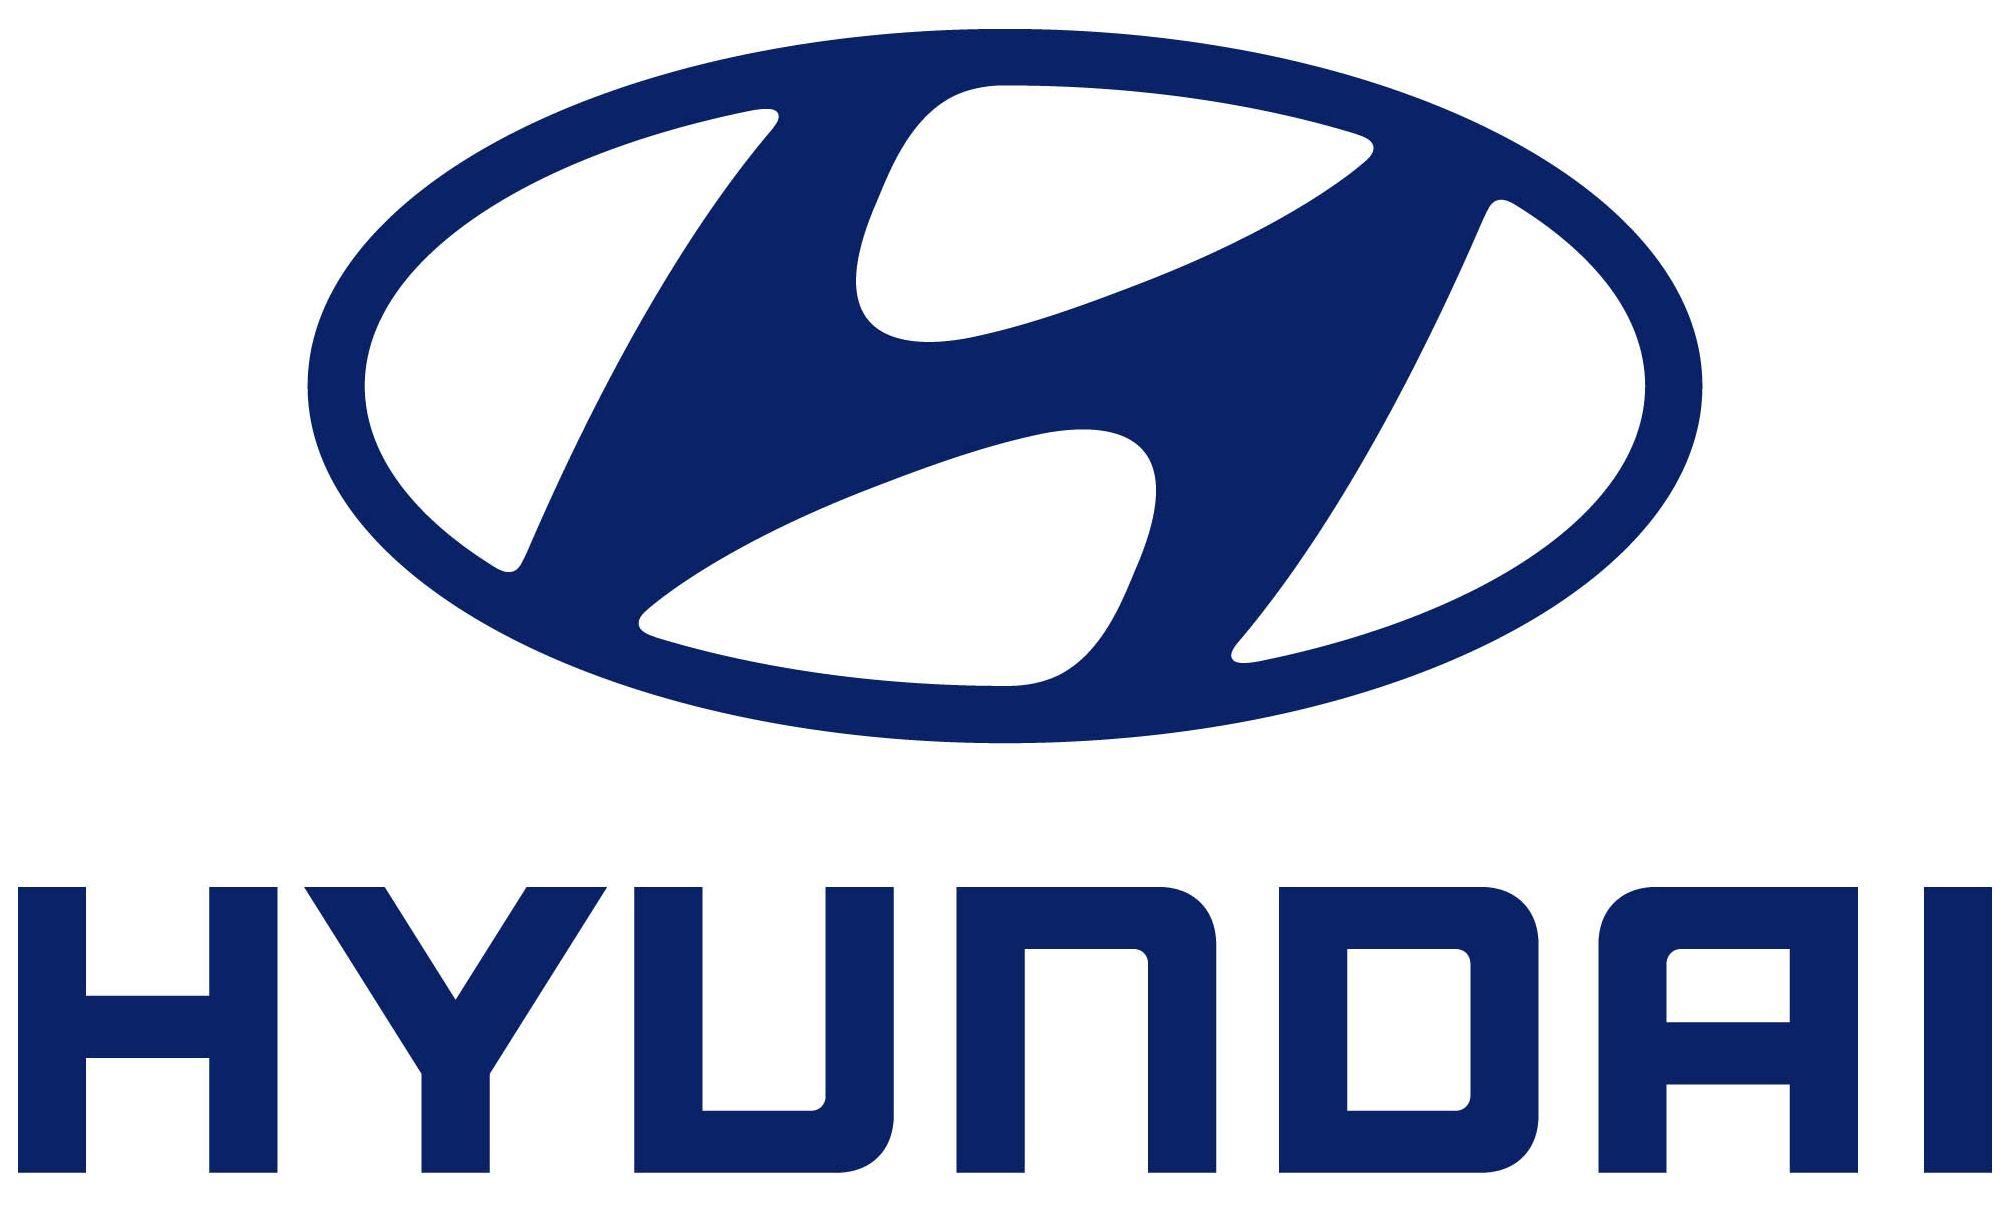 Old Hyundai Logo - Hyundai Logo, Huyndai Car Symbol Meaning and History | Car Brand ...